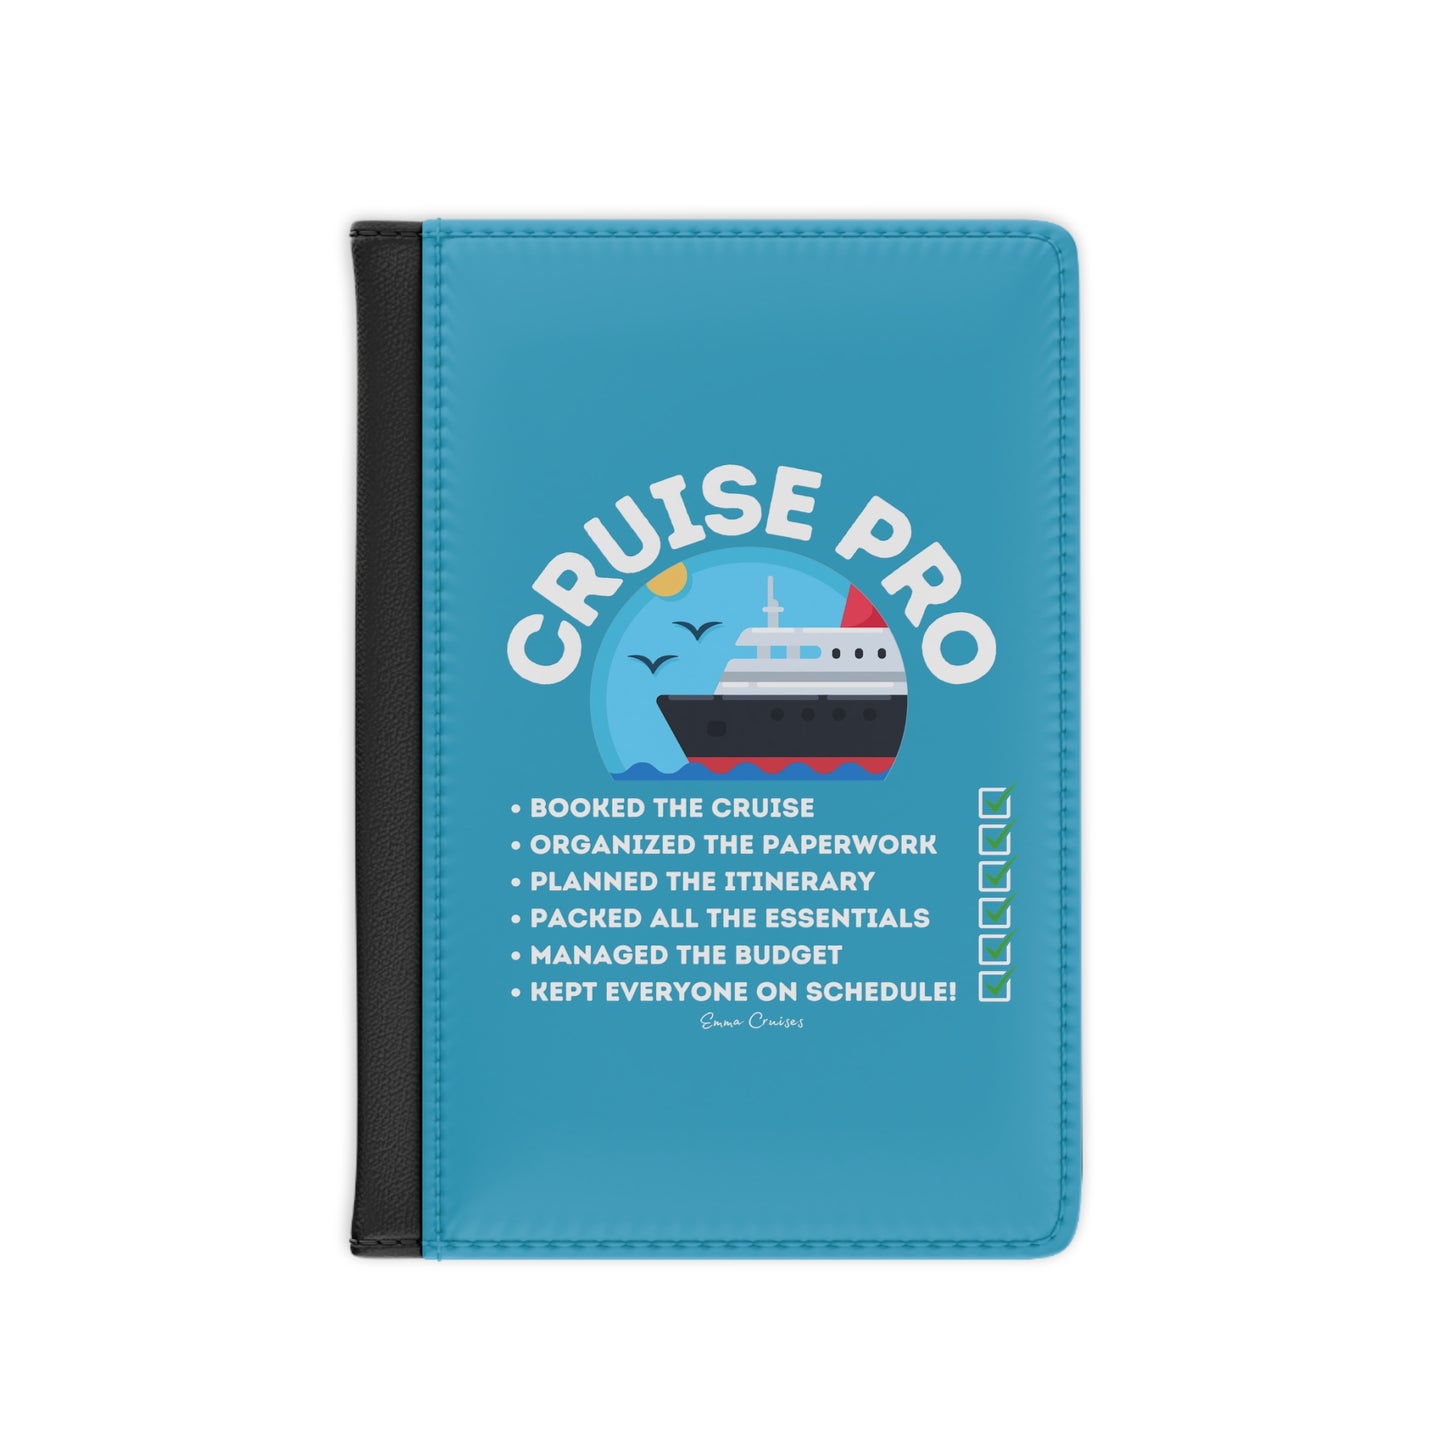 Soy un Cruise Pro - Funda para pasaporte